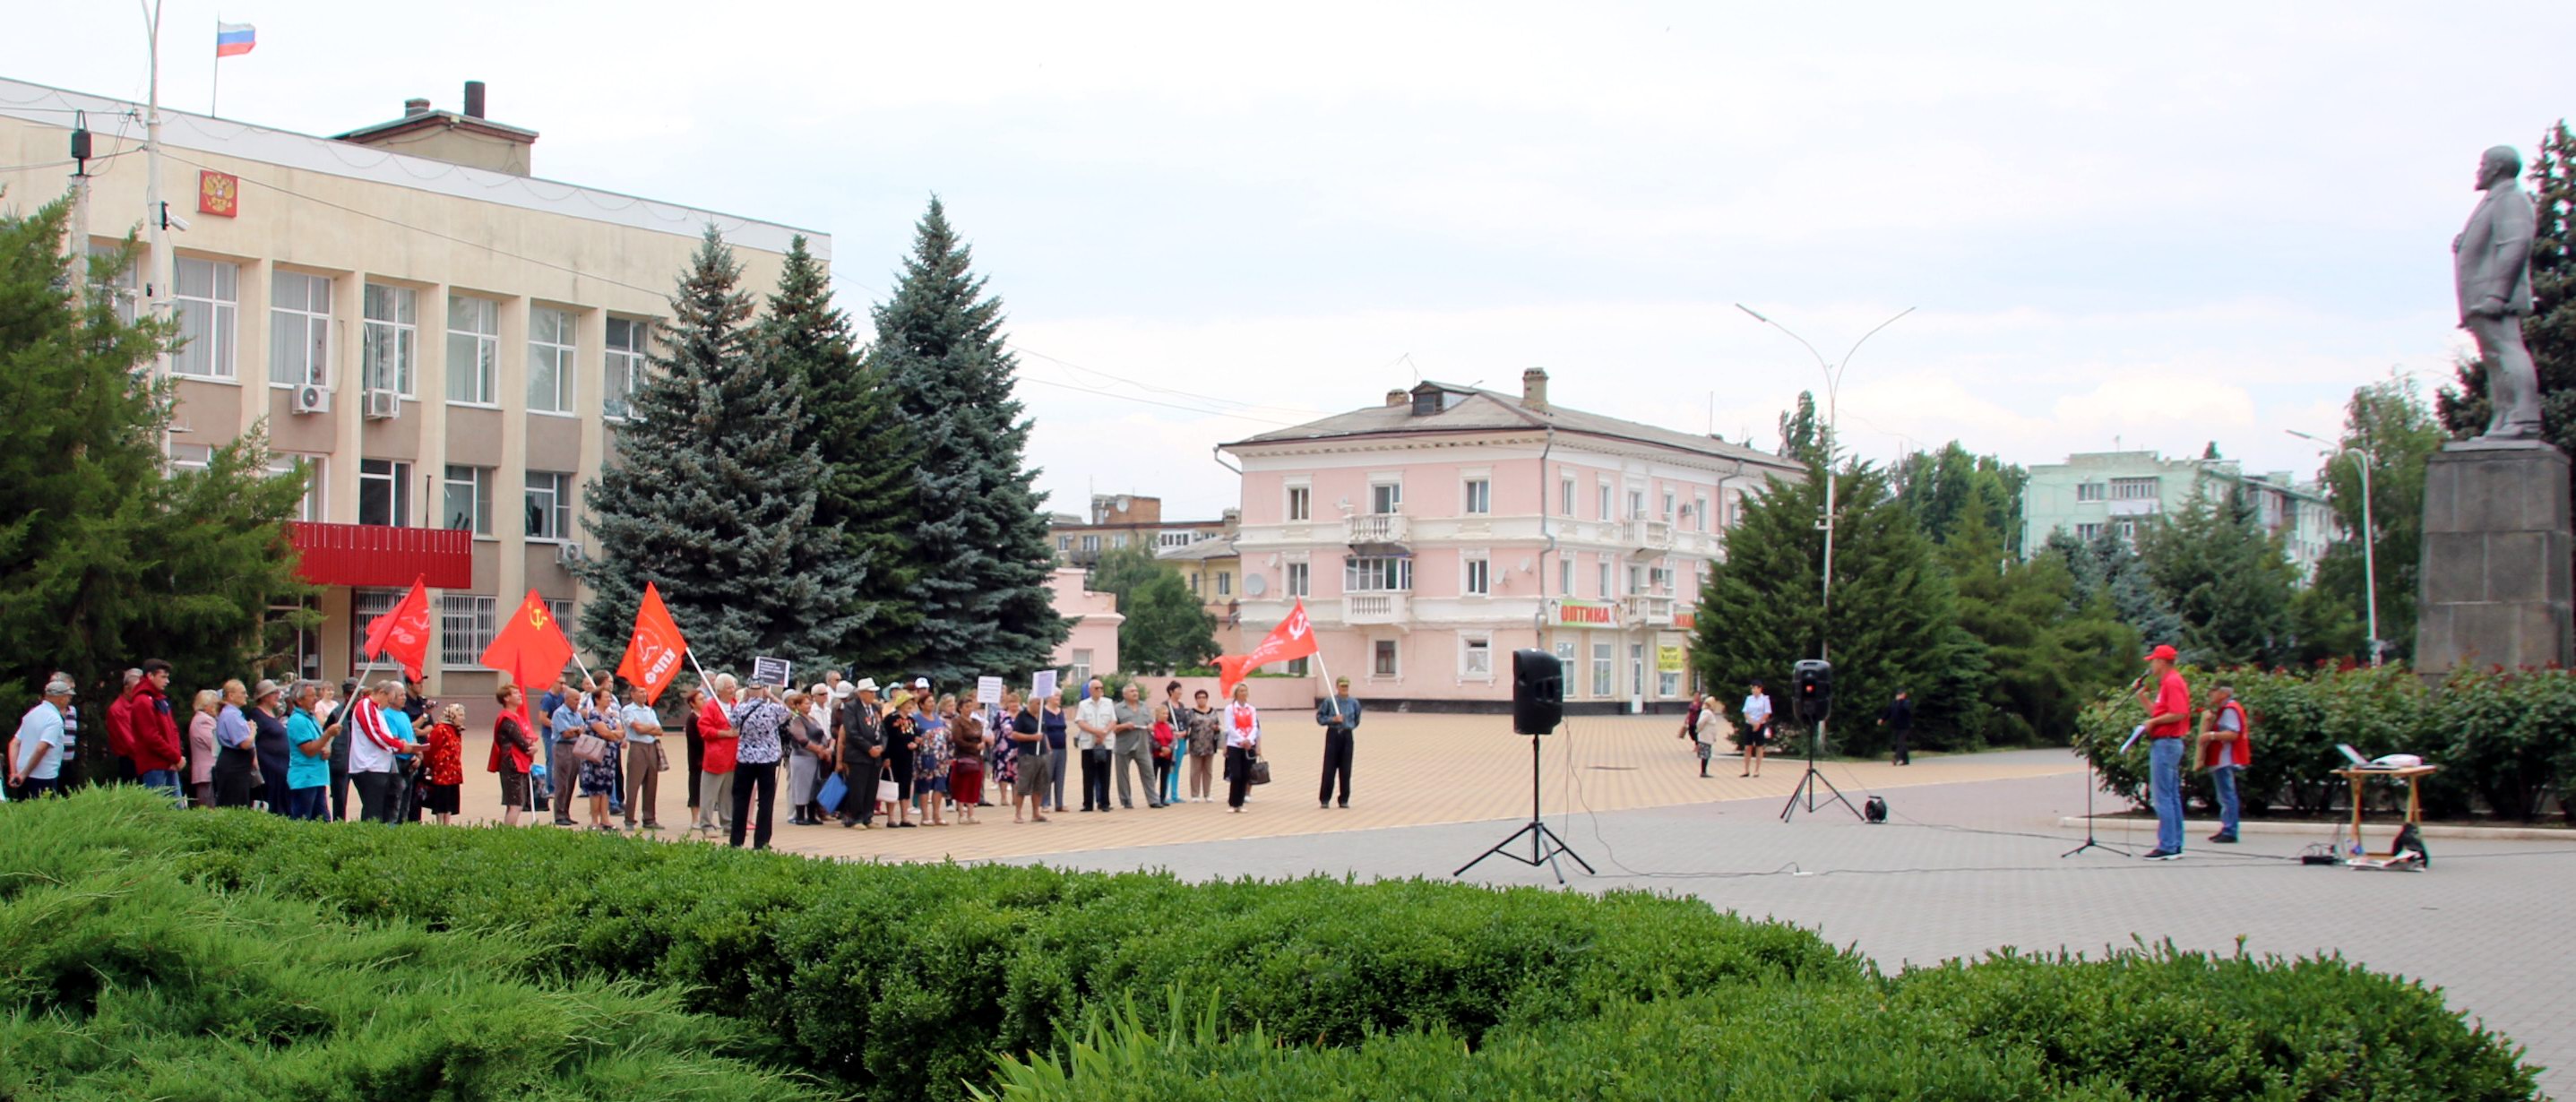 Митинг в поддержку Грудинина в Красном Сулине, 13 июля 2019 года. Фото Вячеслава Прудникова для "Кавказского узла".